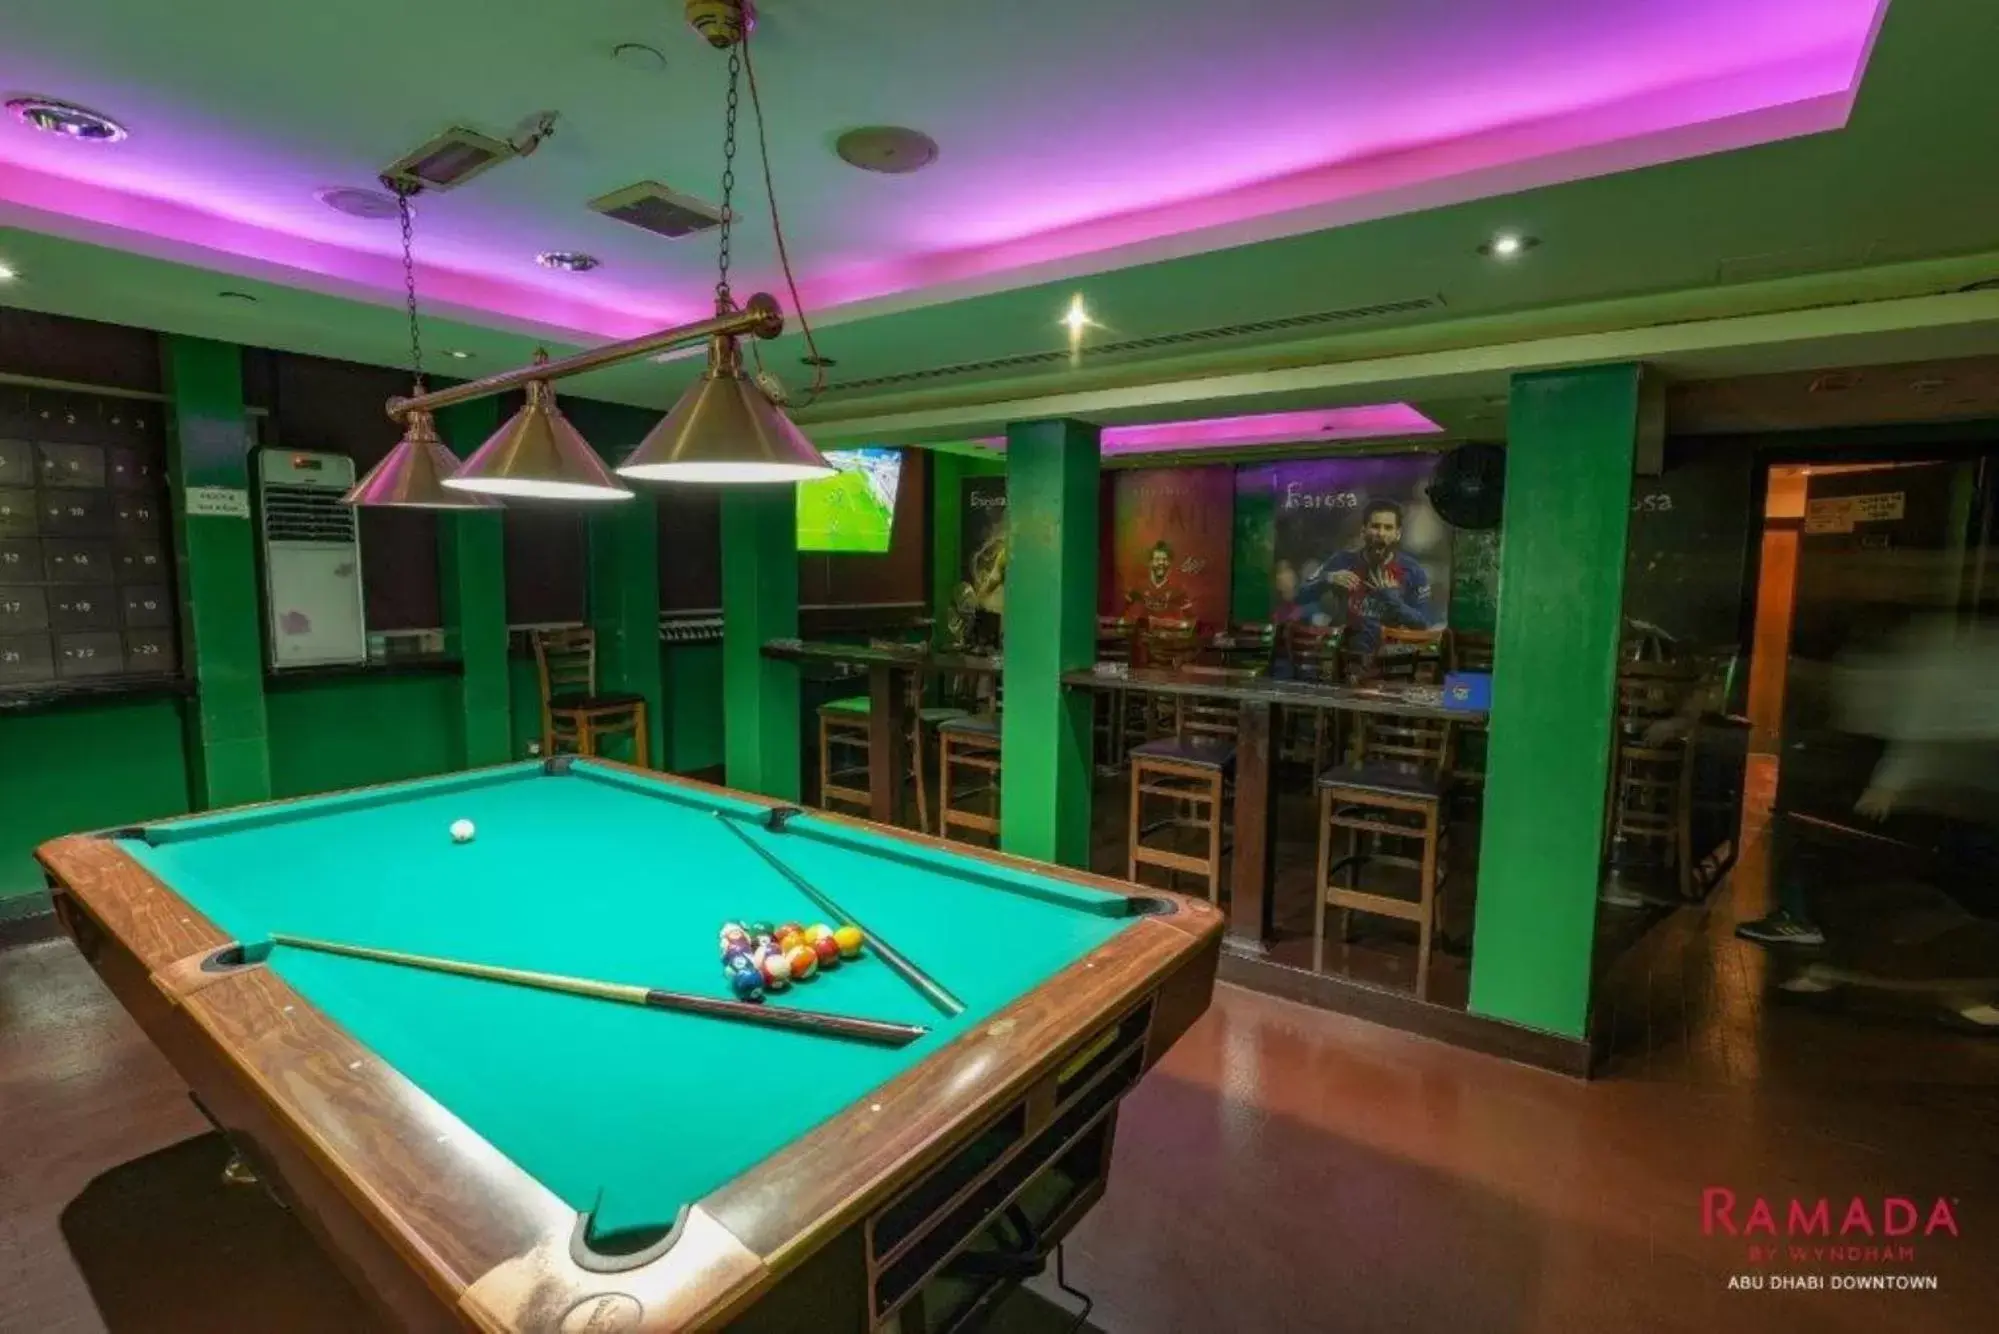 Lounge or bar, Billiards in Ramada Downtown Abu Dhabi